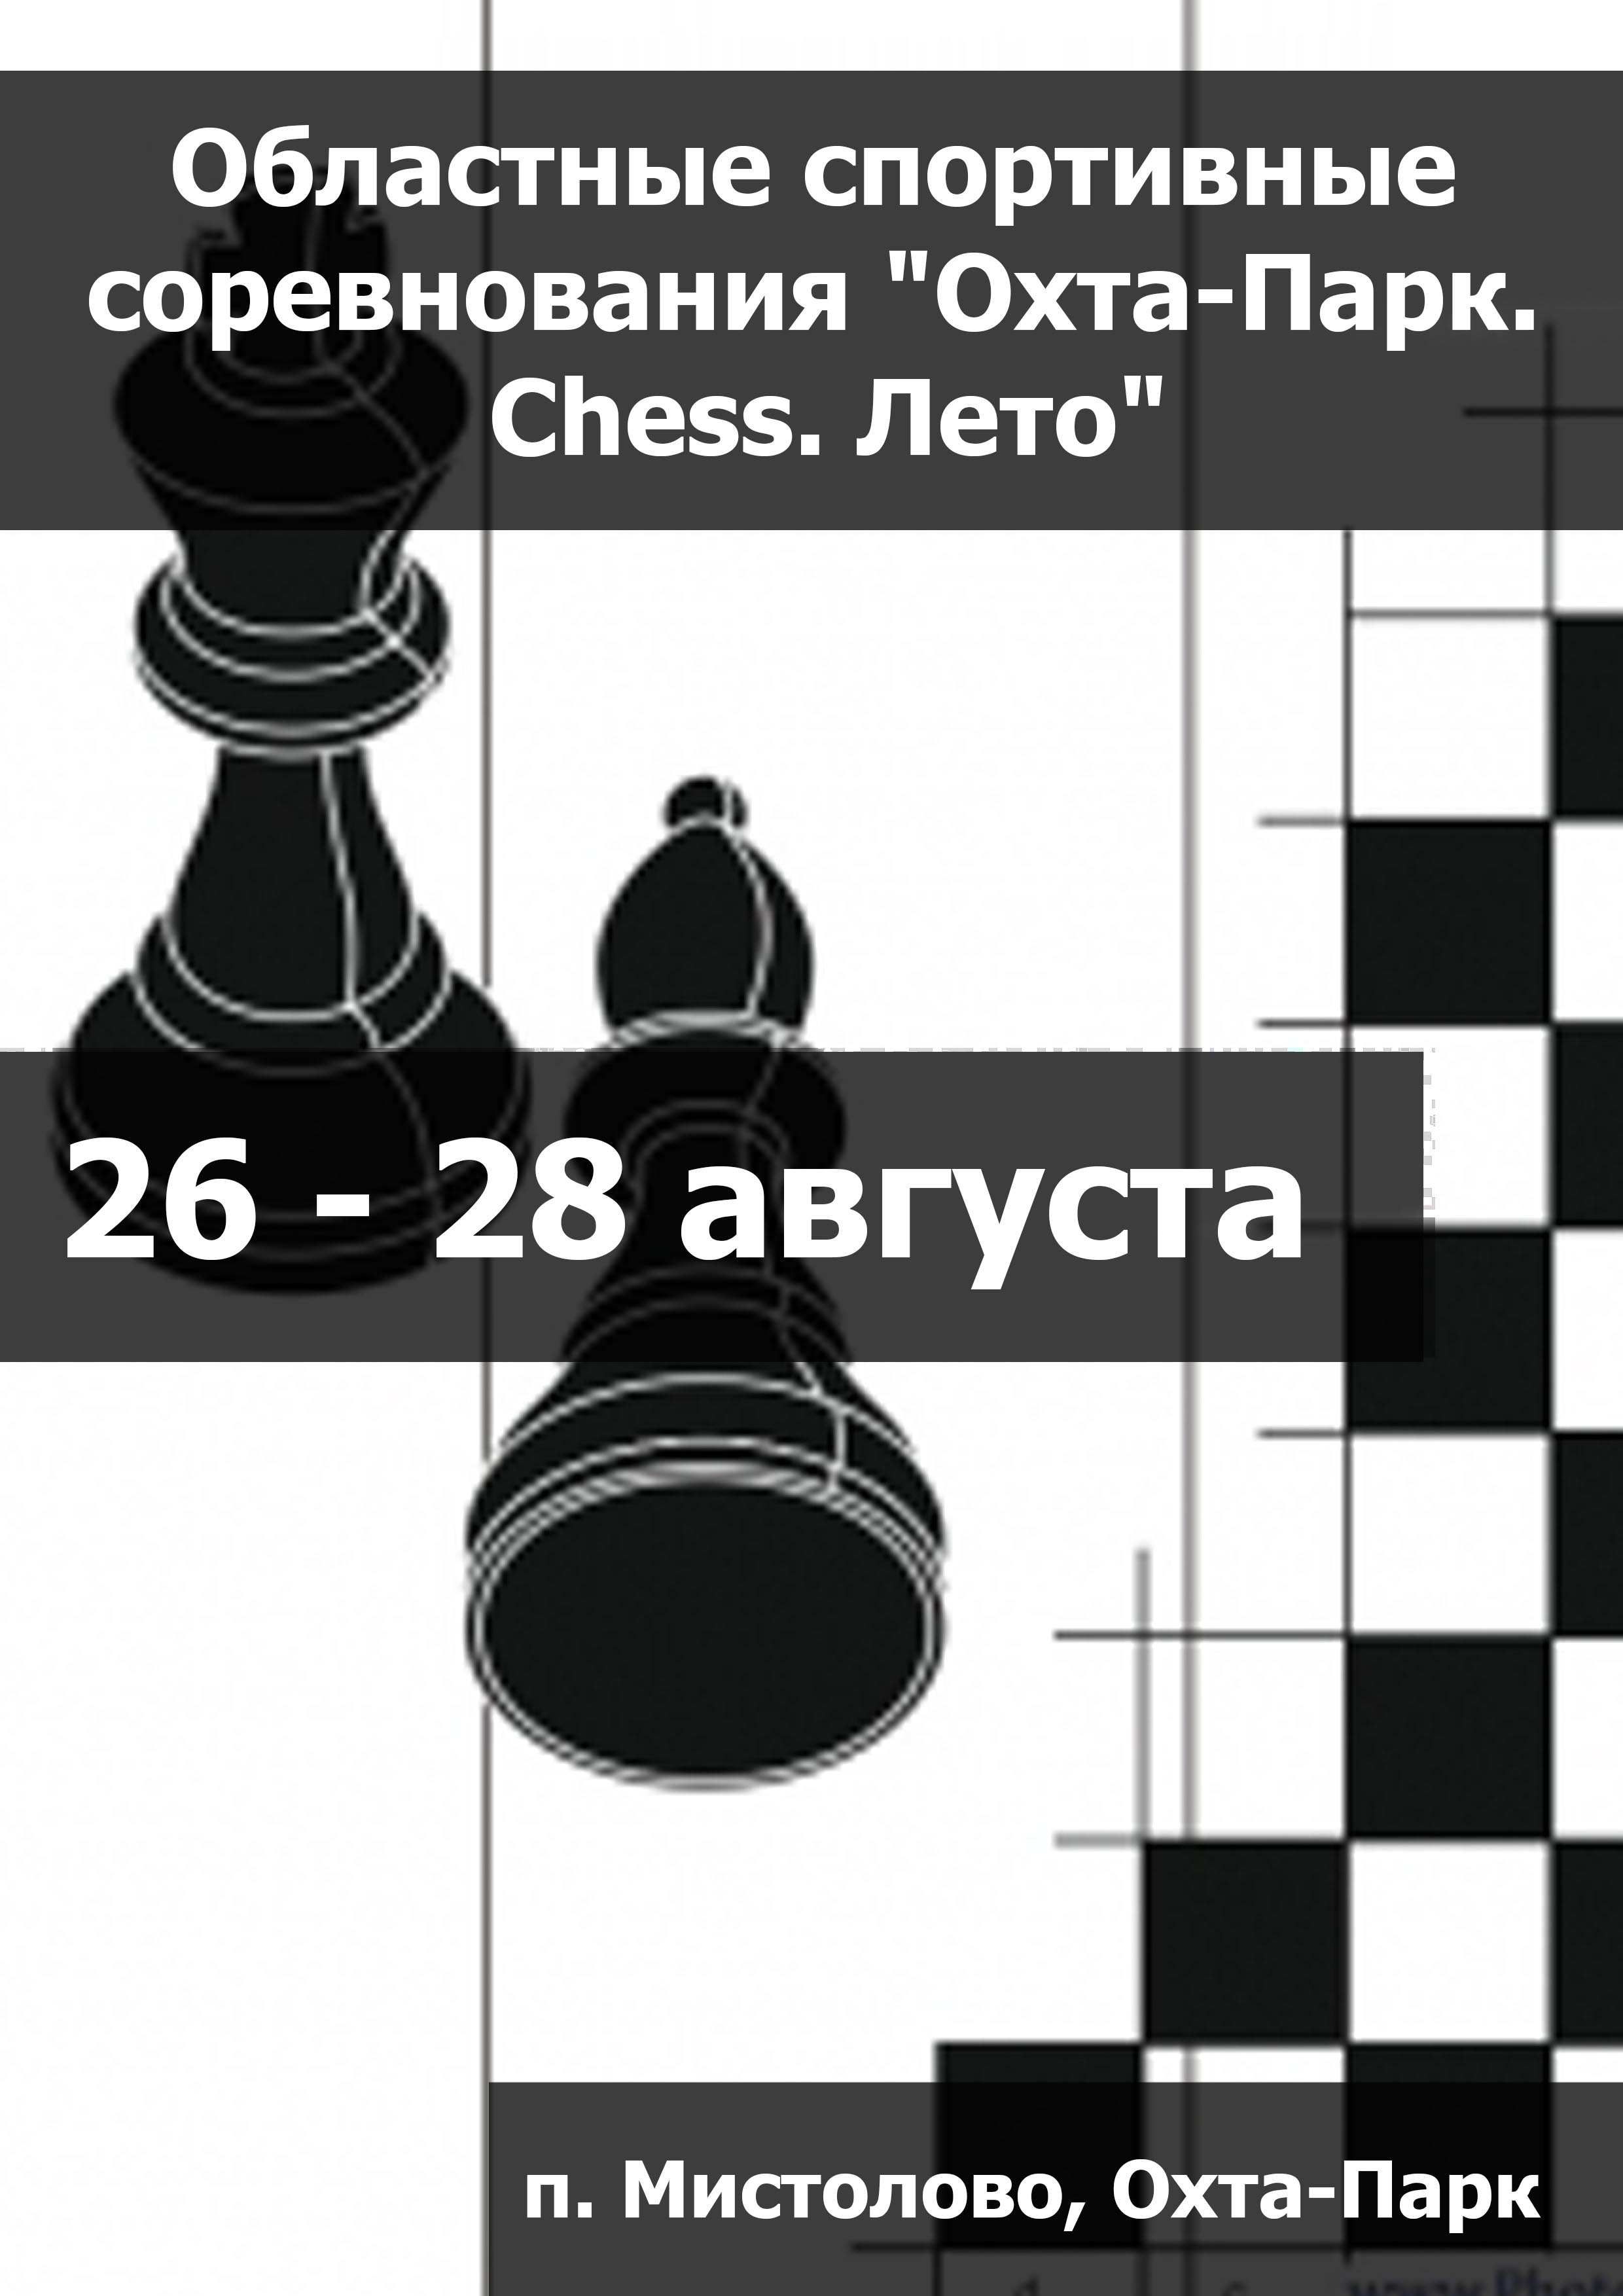 Областные спортивные соревнования "Охта-Парк. Chess. Лето" 26  აგვისტო
 2023  წელი
 